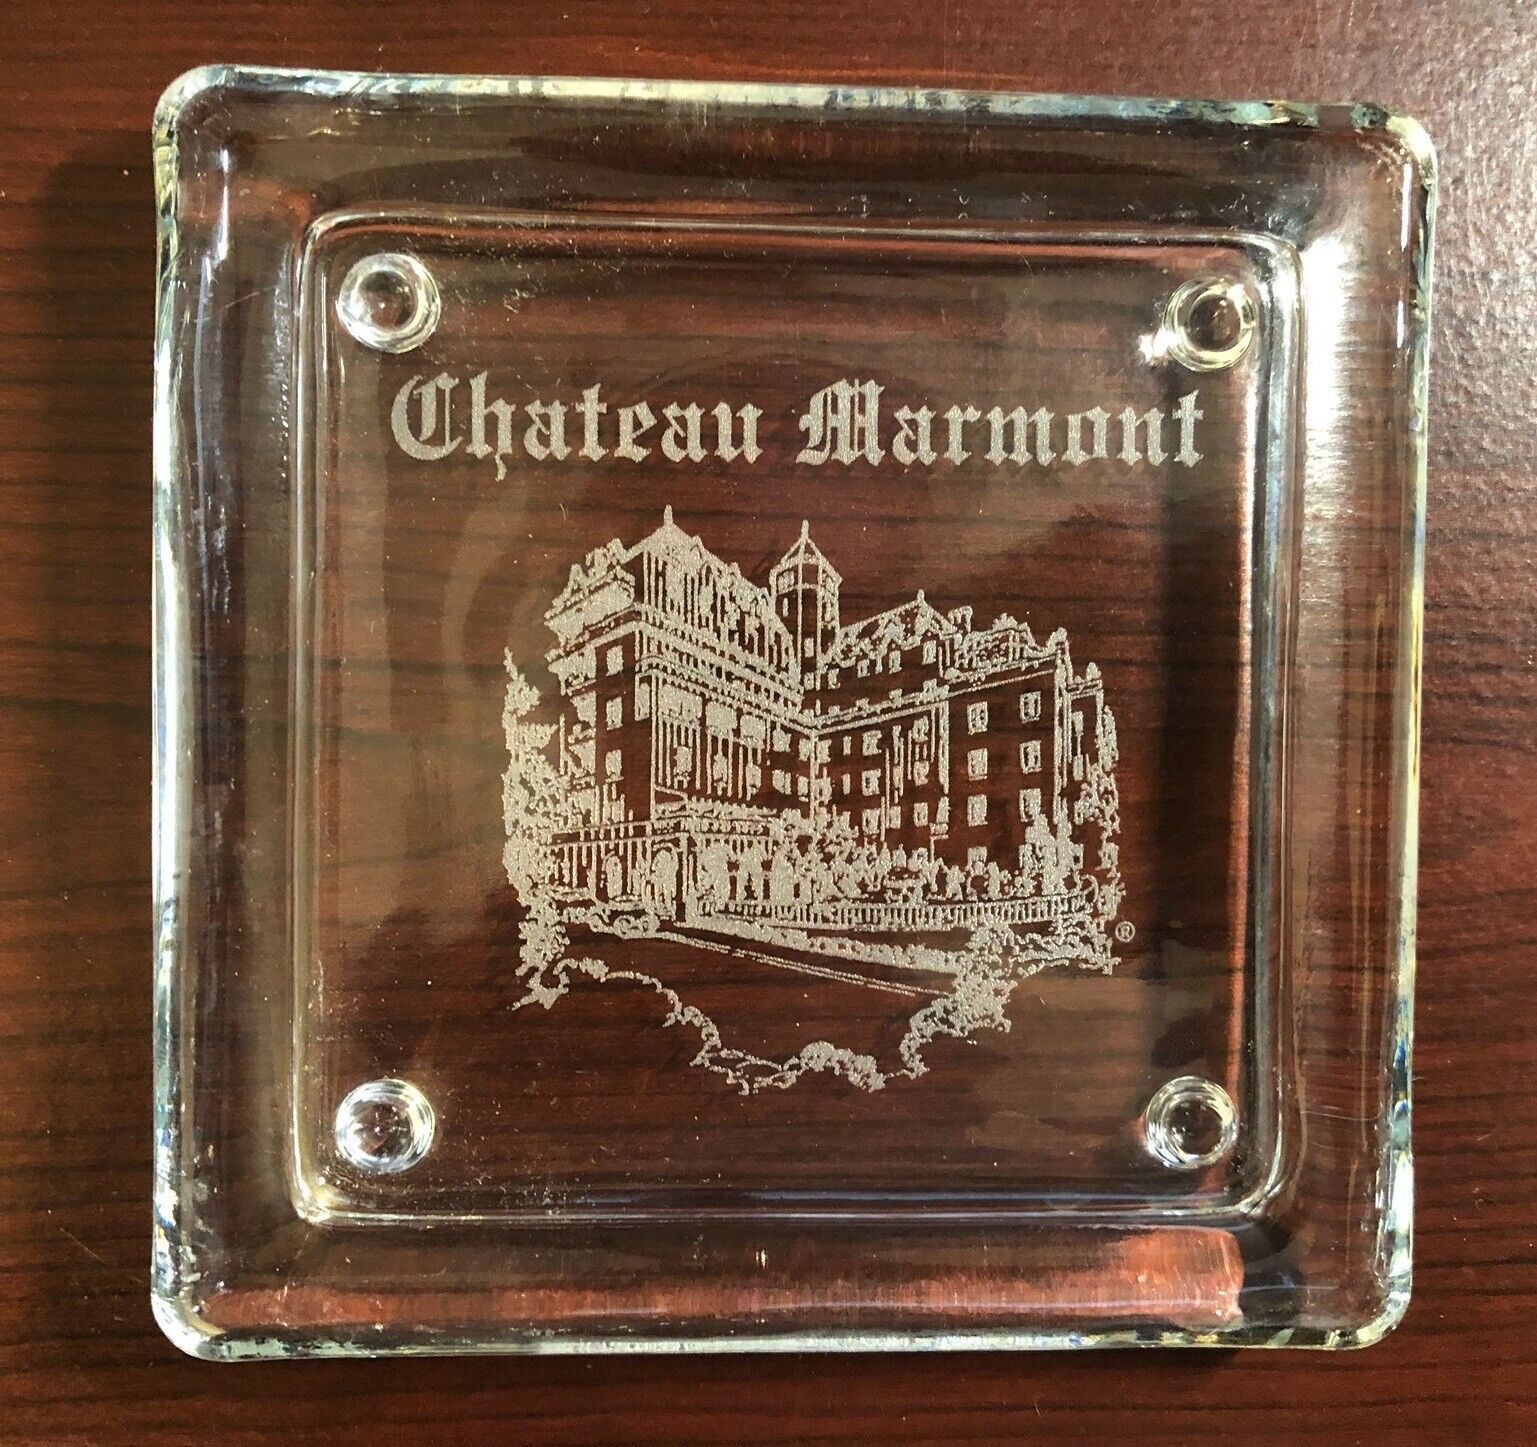 RARE Chateau Marmont Ashtray